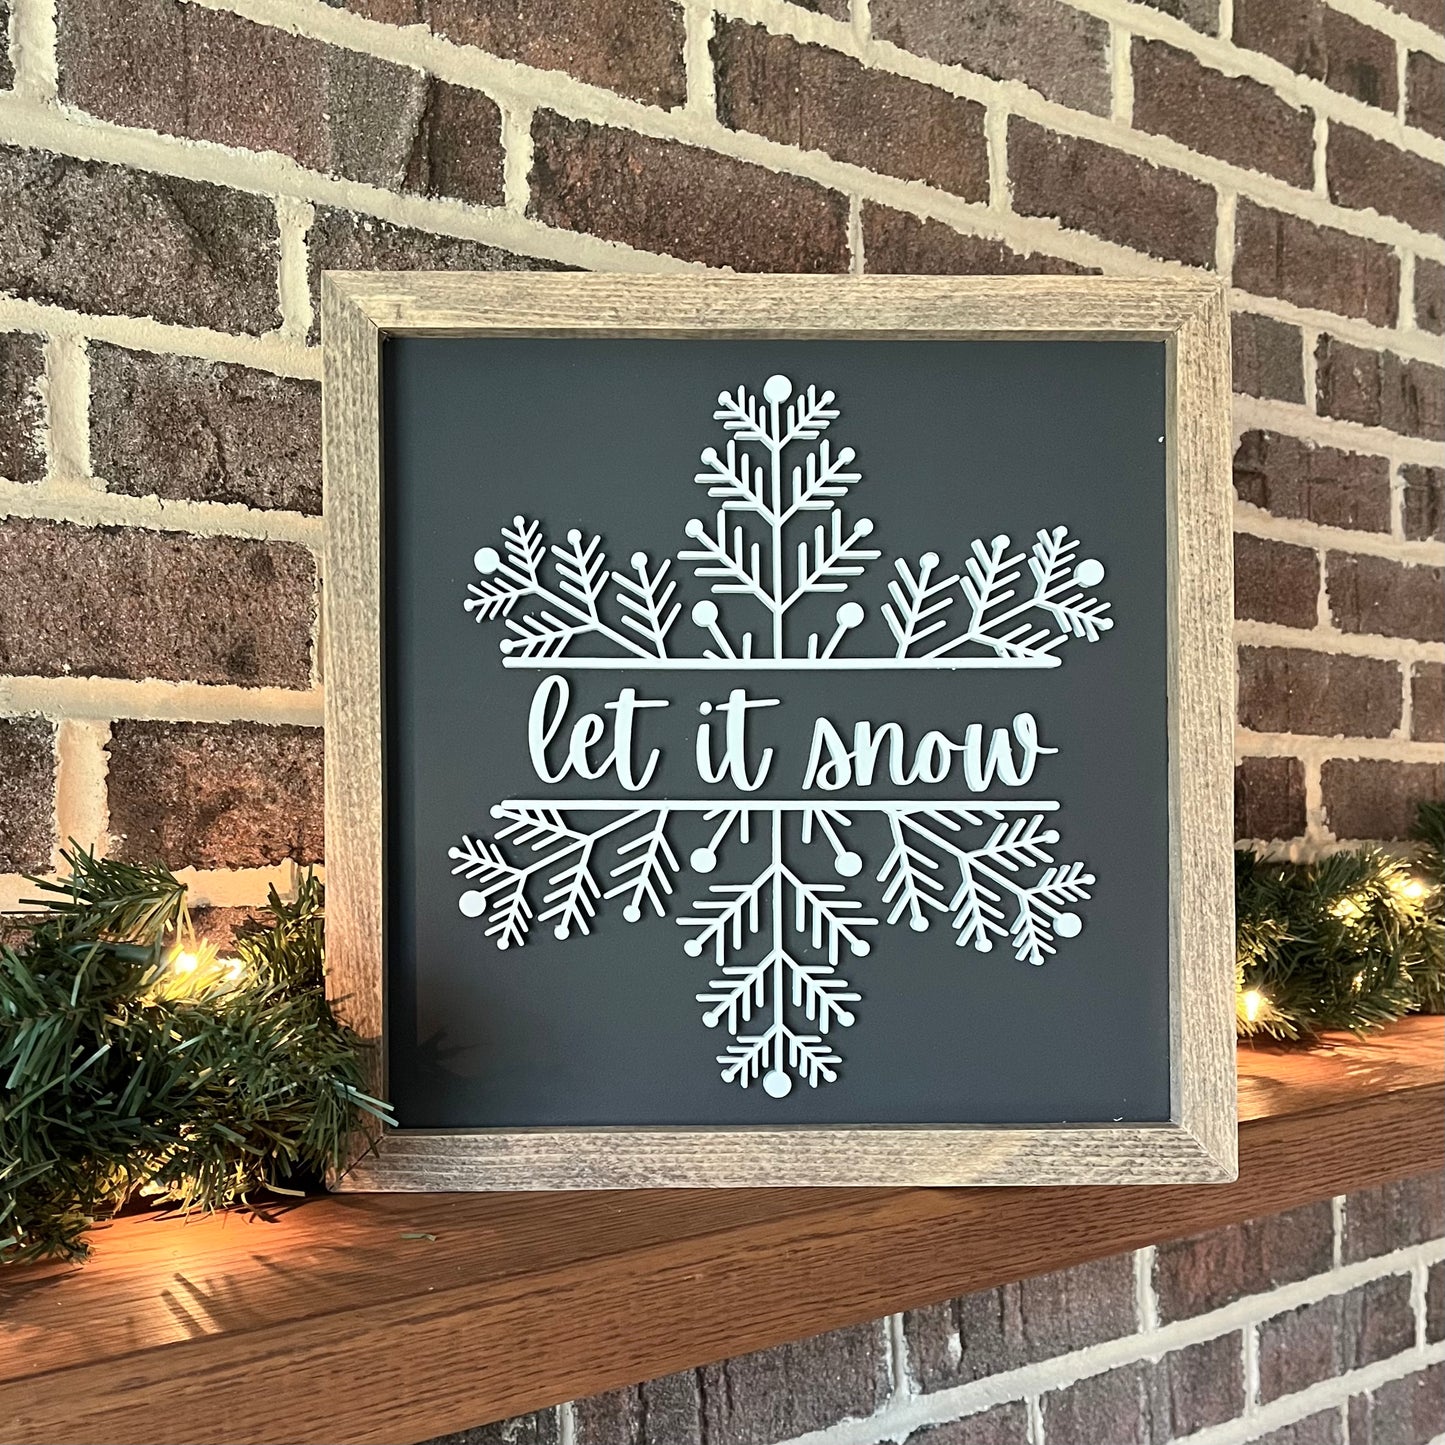 Let it snow 3D wood sign